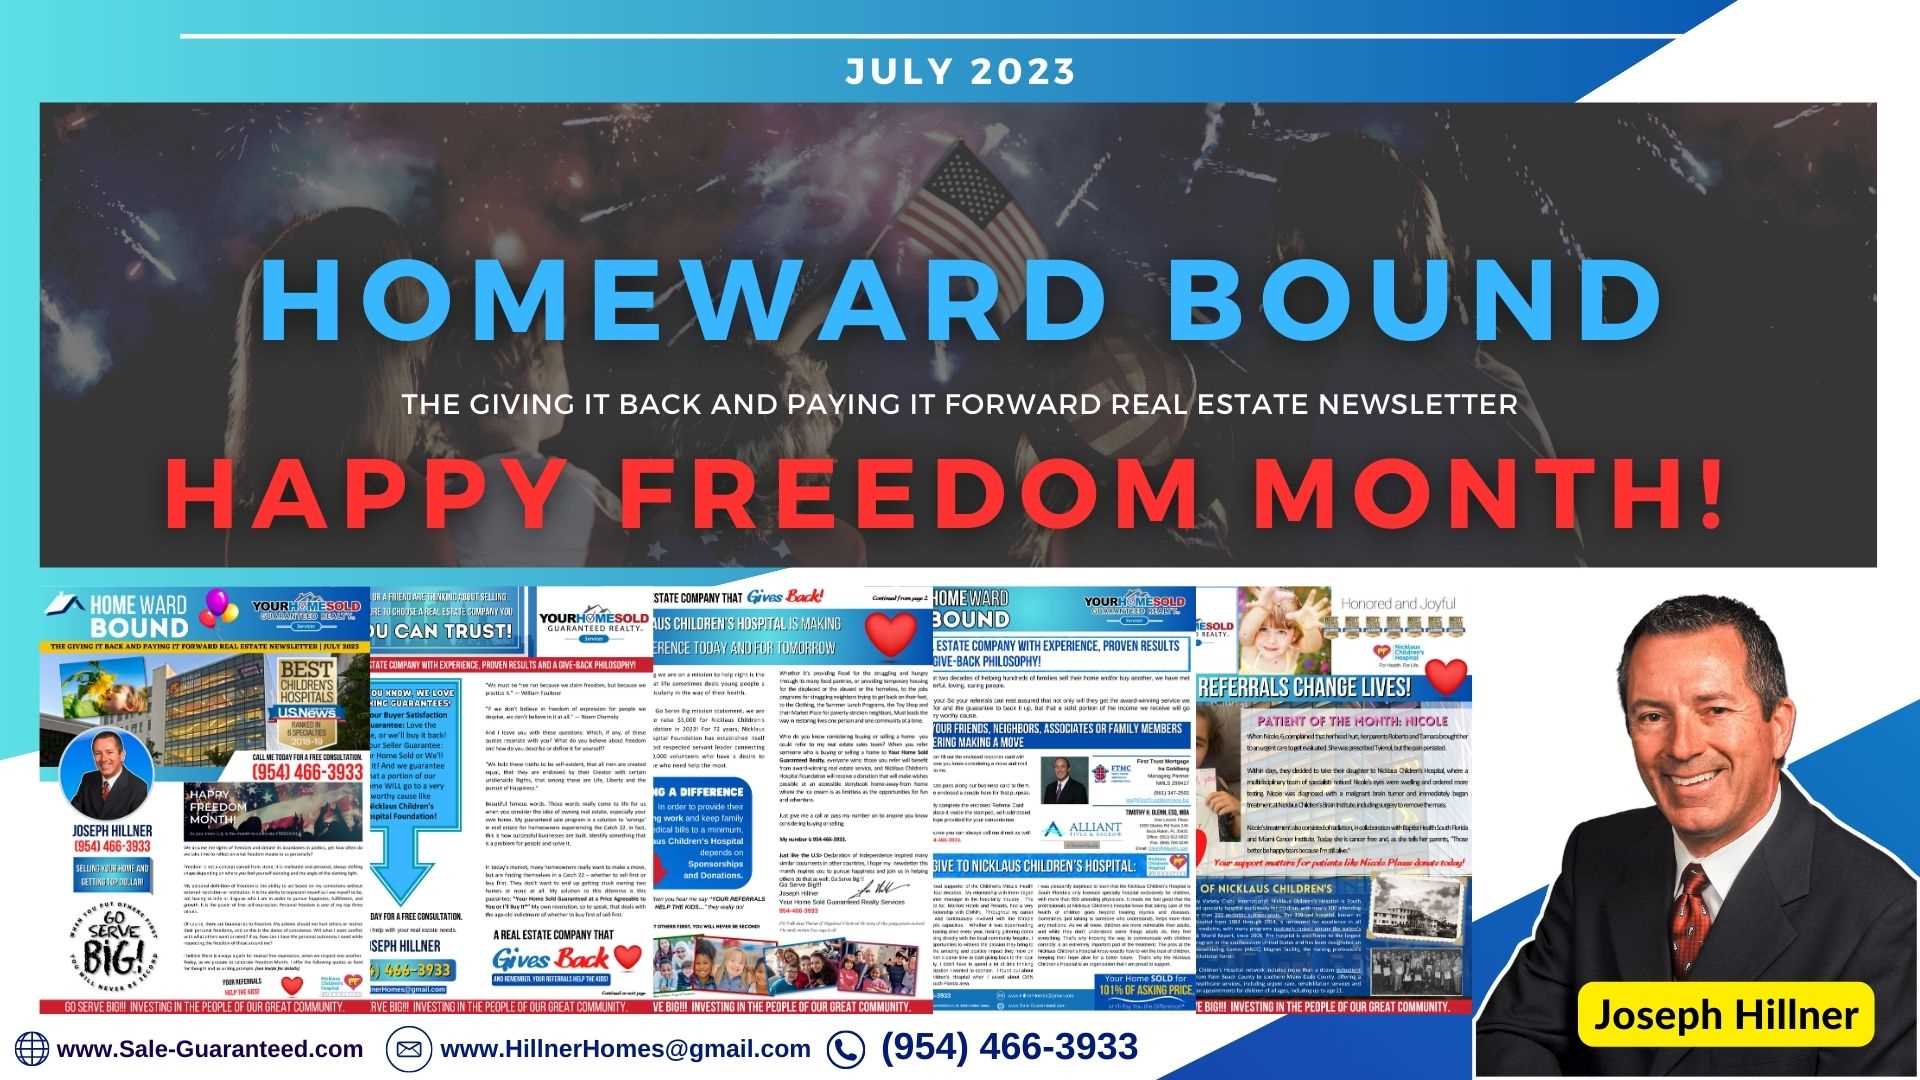 Happy Freedom Month! | July 2023 Homeward Bound Newsletter